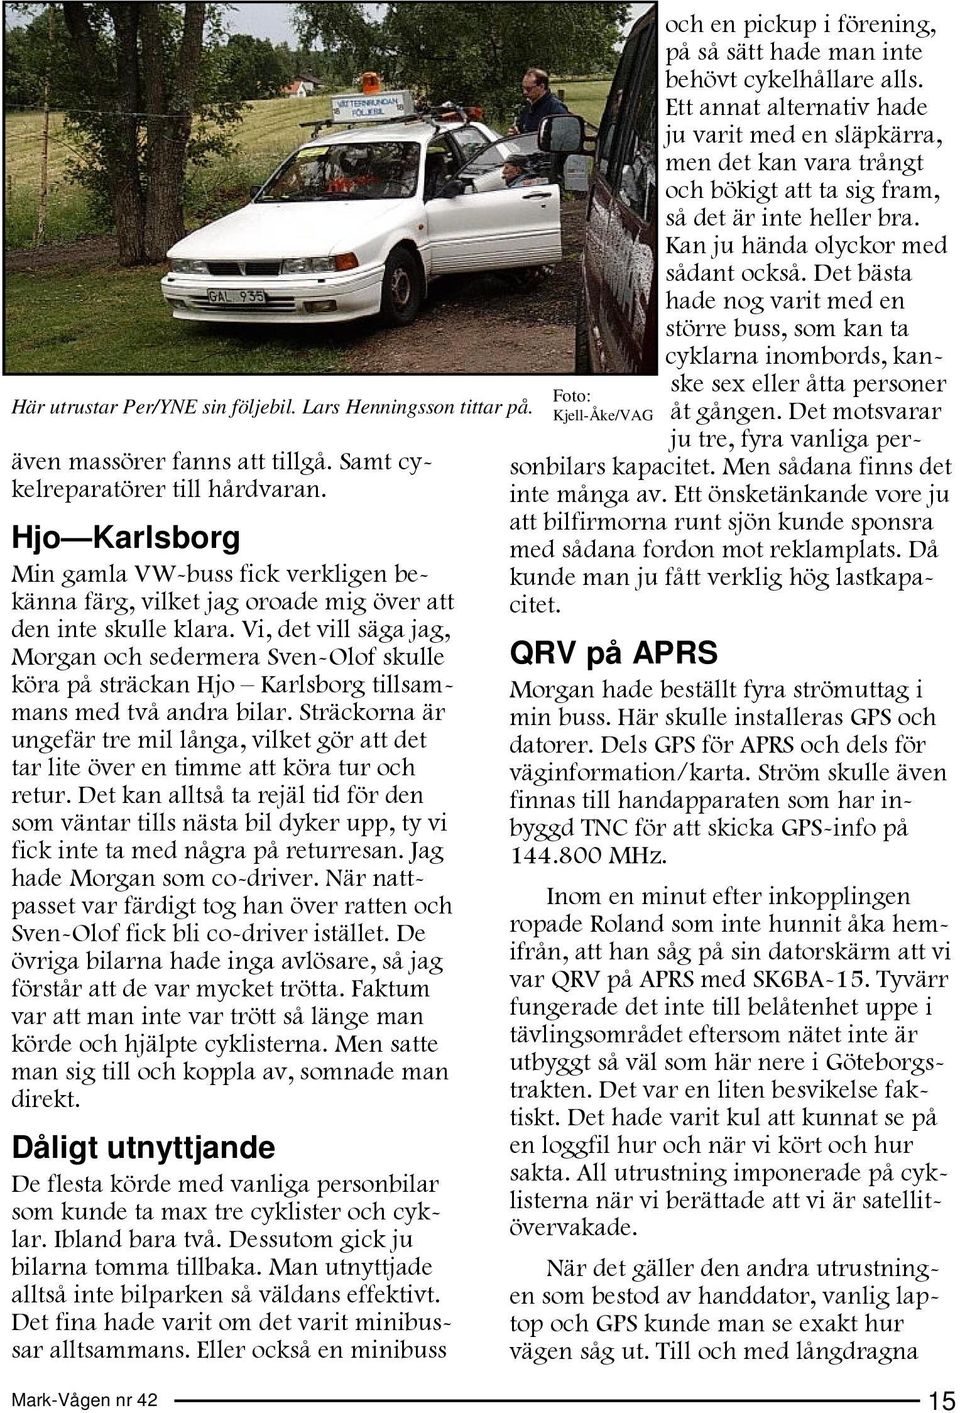 Vi, det vill säga jag, Morgan och sedermera Sven-Olof skulle köra på sträckan Hjo Karlsborg tillsammans med två andra bilar.